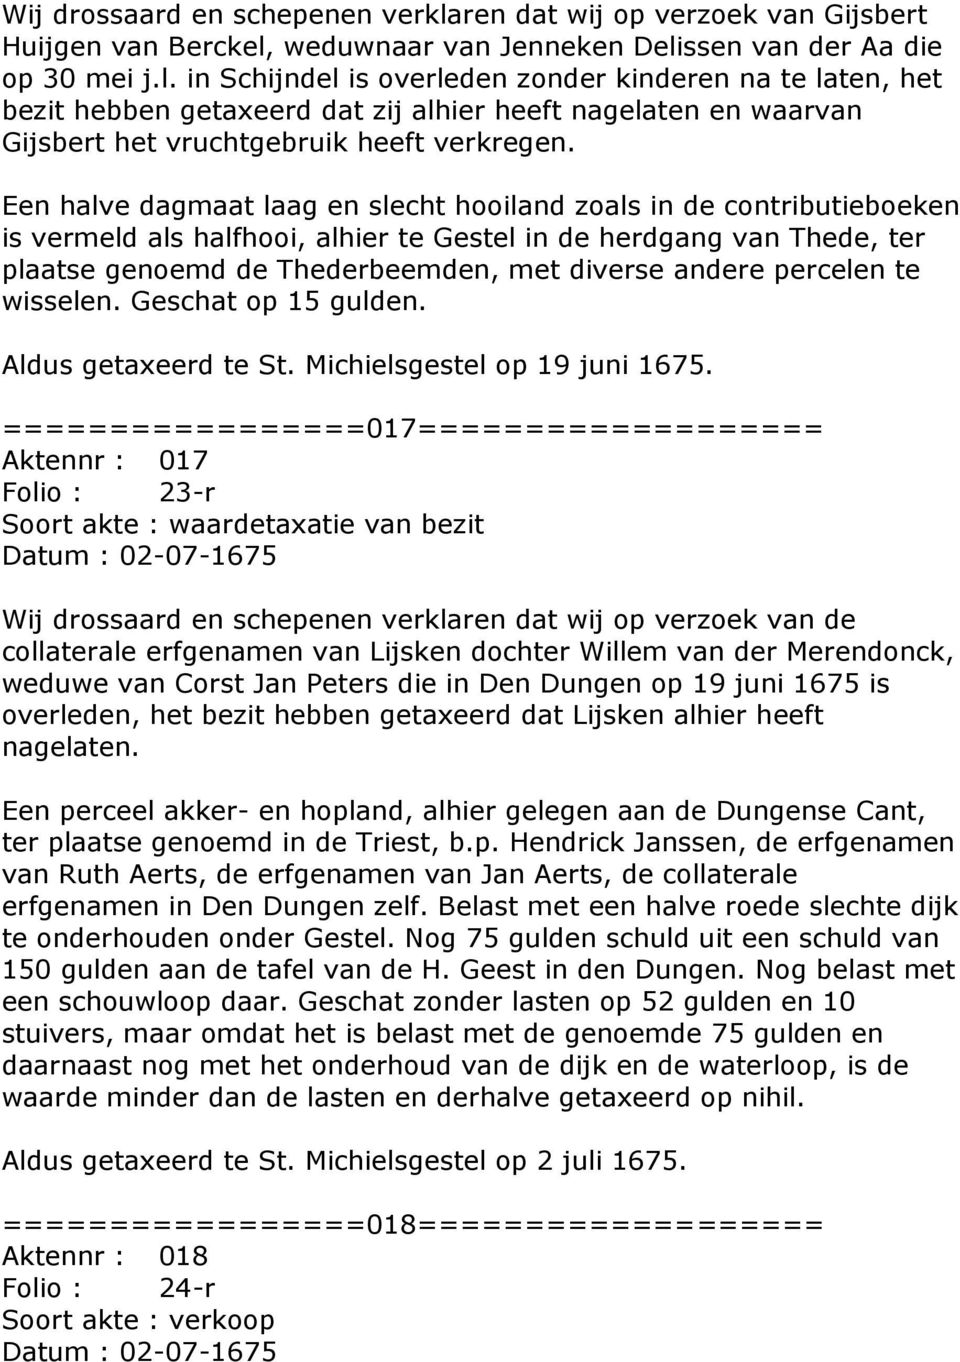 weduwnaar van Jenneken Delissen van der Aa die op 30 mei j.l. in Schijndel is overleden zonder kinderen na te laten, het bezit hebben getaxeerd dat zij alhier heeft nagelaten en waarvan Gijsbert het vruchtgebruik heeft verkregen.